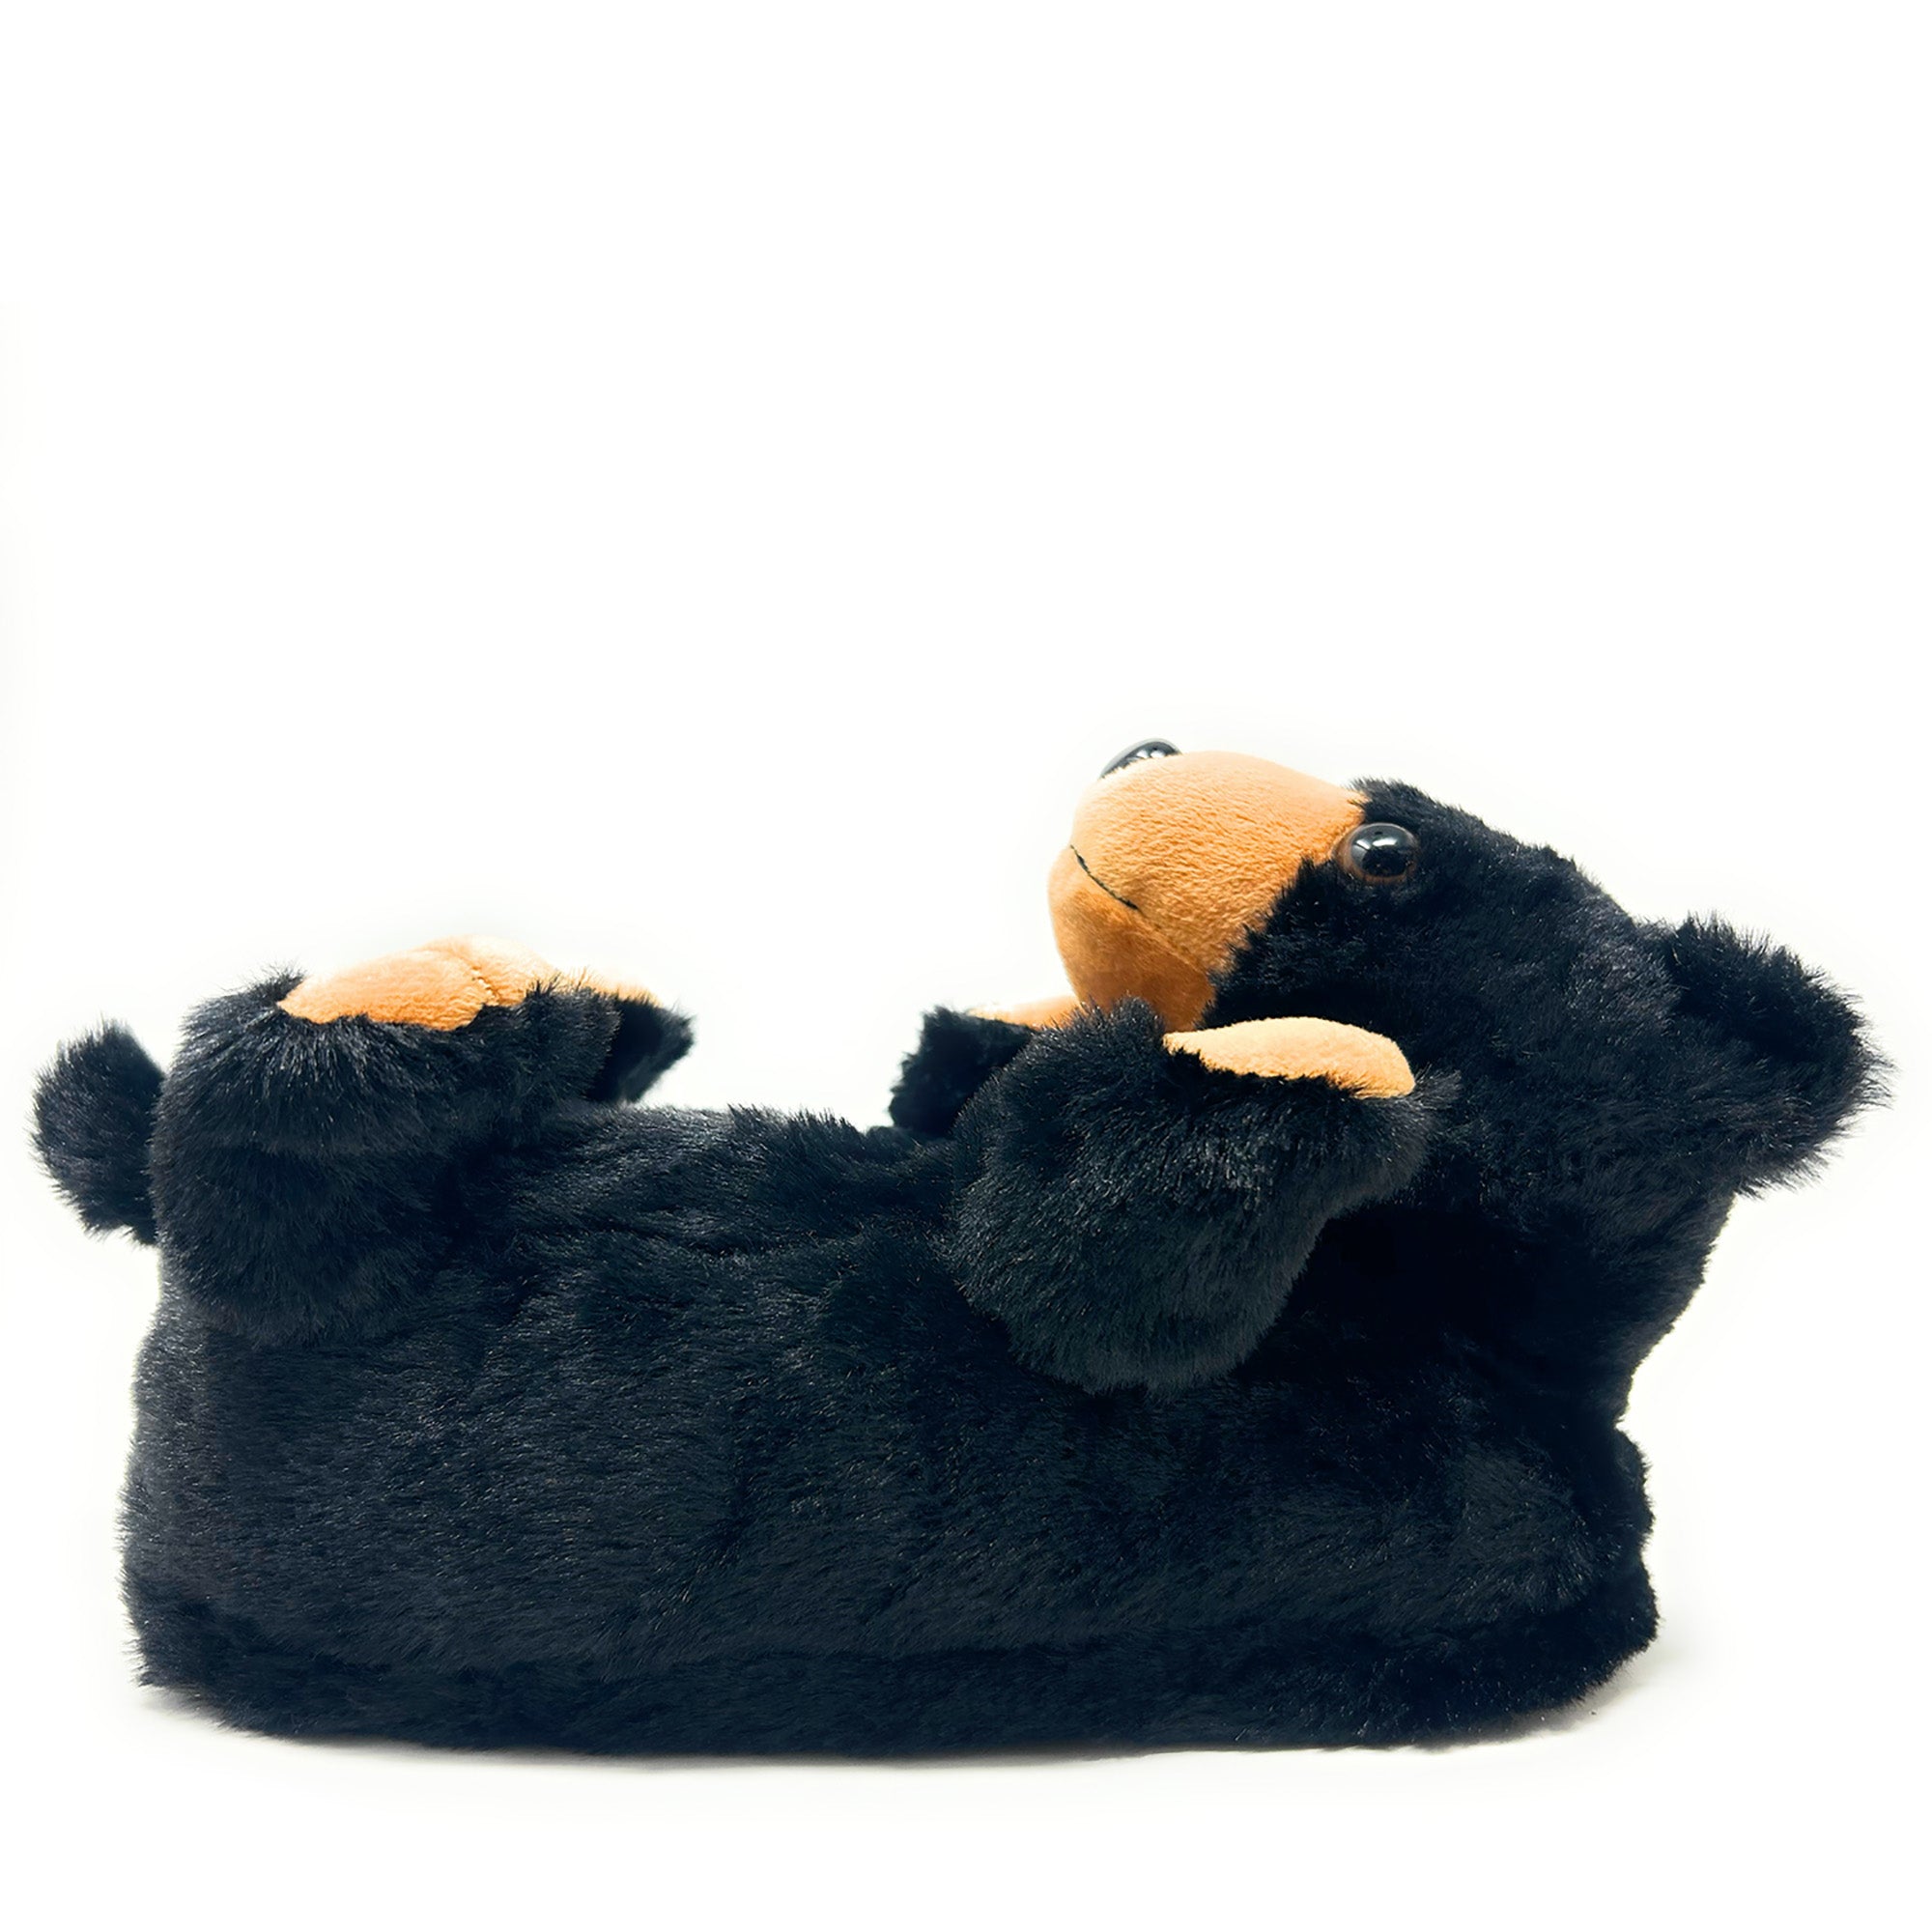 Pantuflas para niños Black Bear Hugs - 0